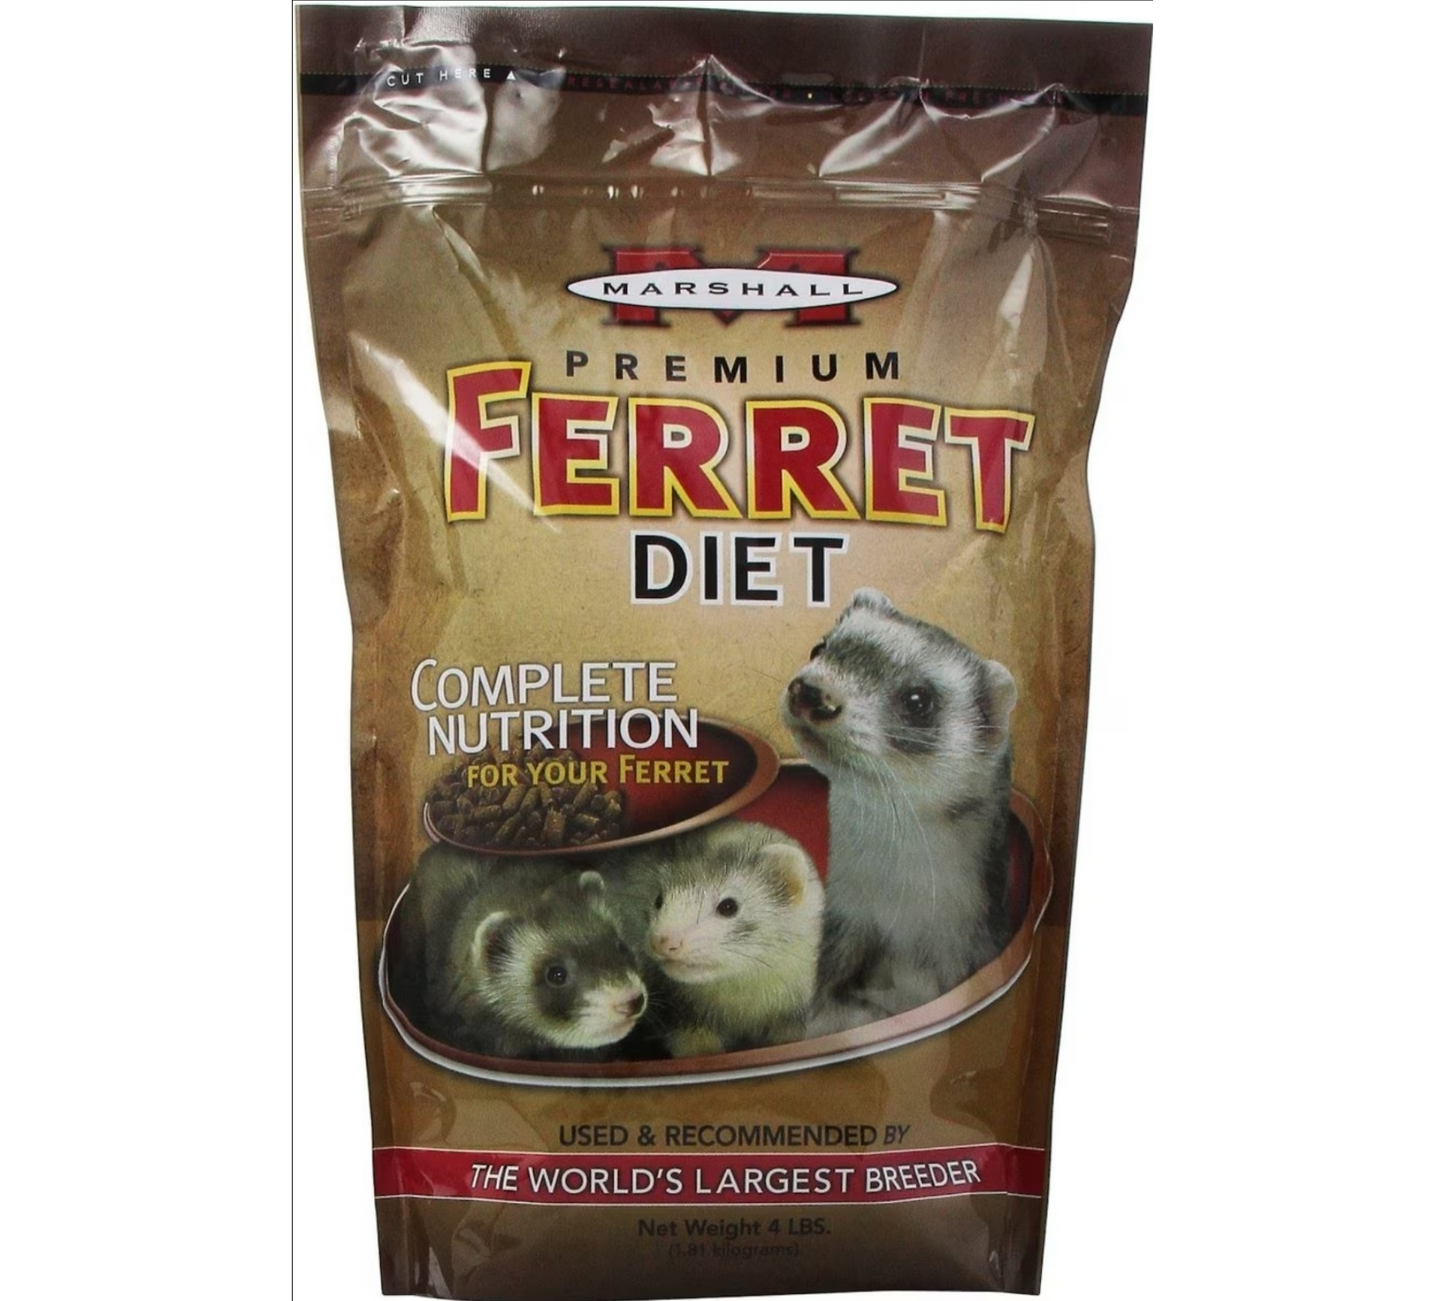 Marshall Premium Ferret Diet Bag